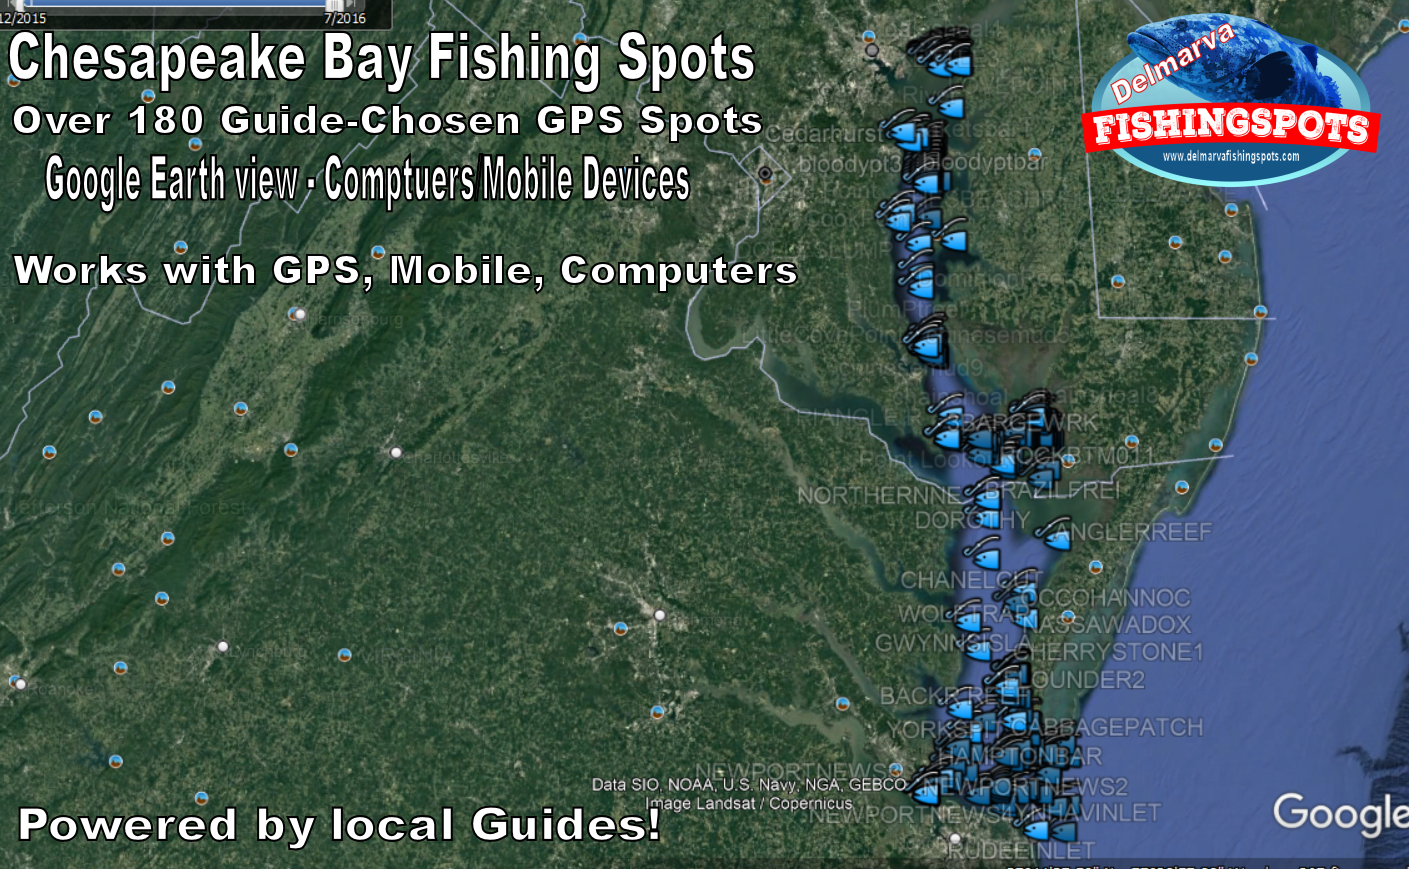 Chesapeake Bay Fishing Spots Map 